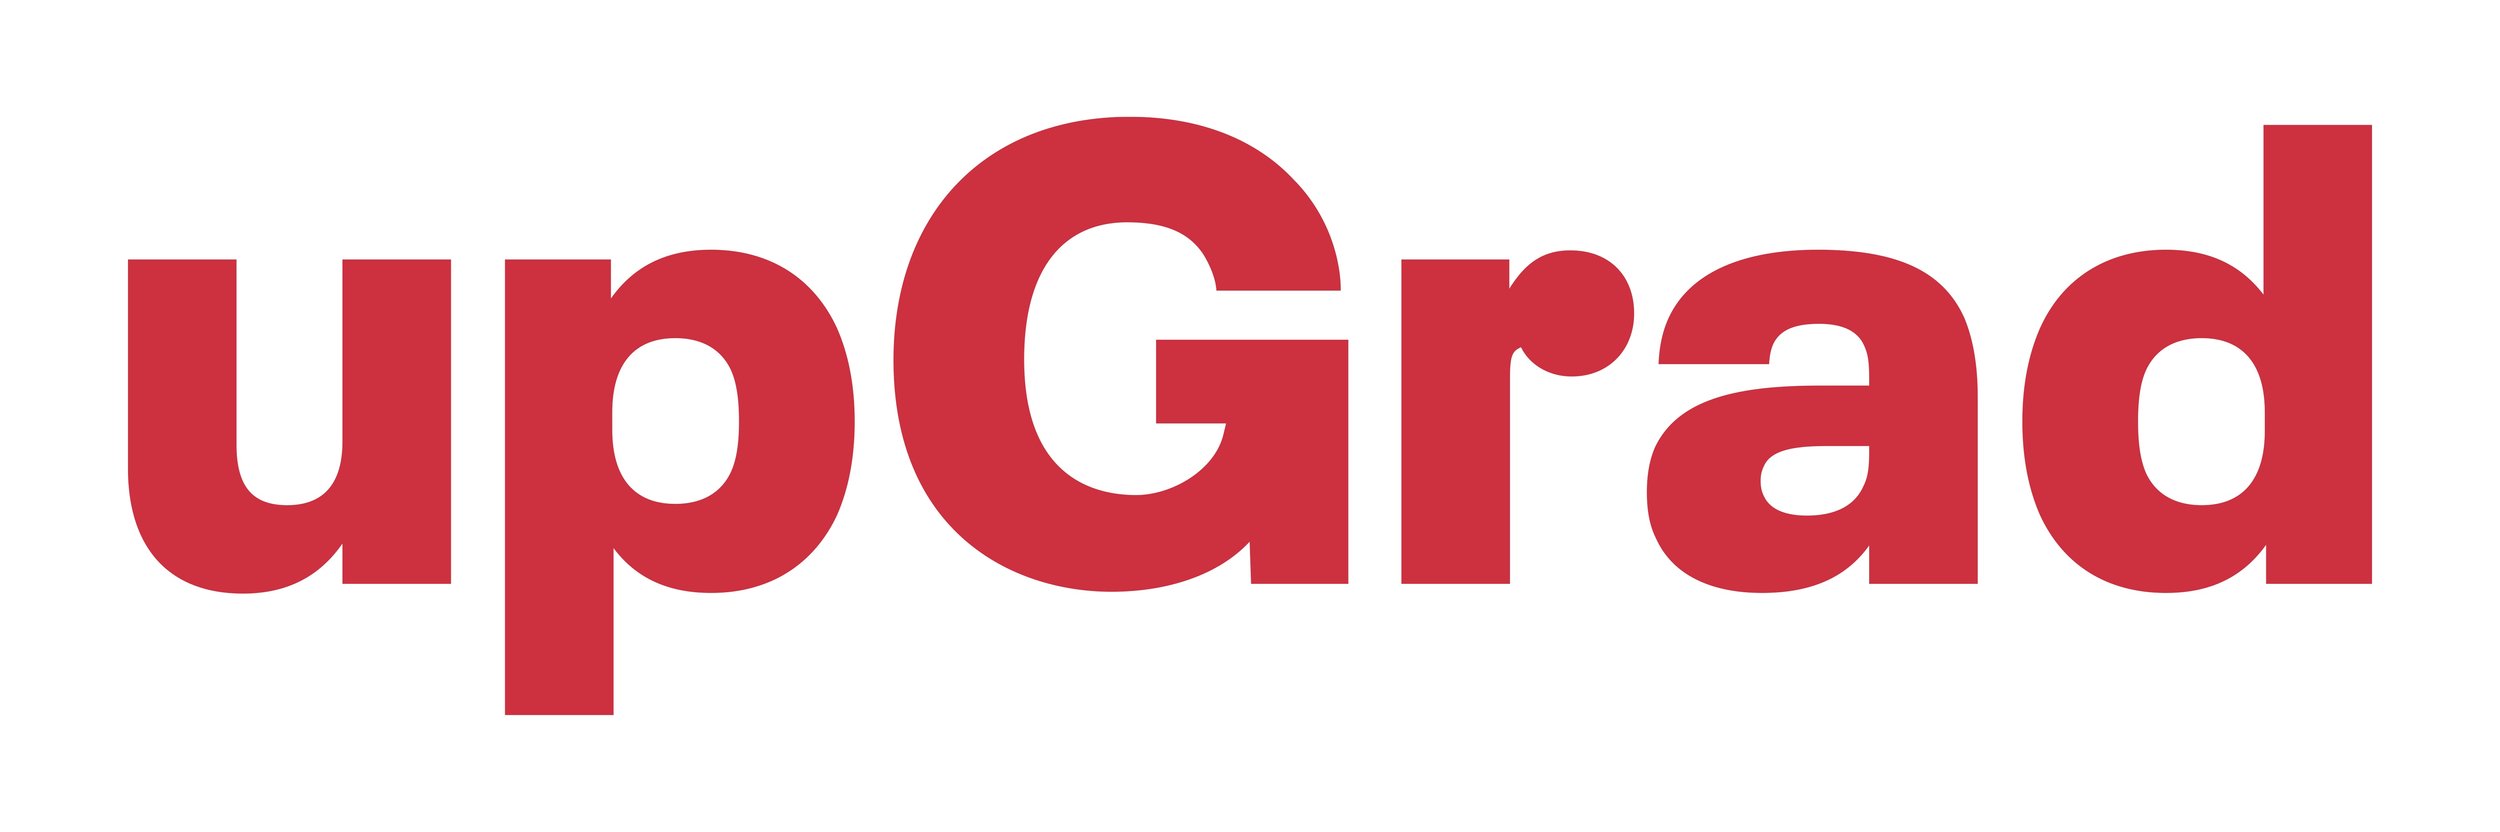 upGrad logo.jpg